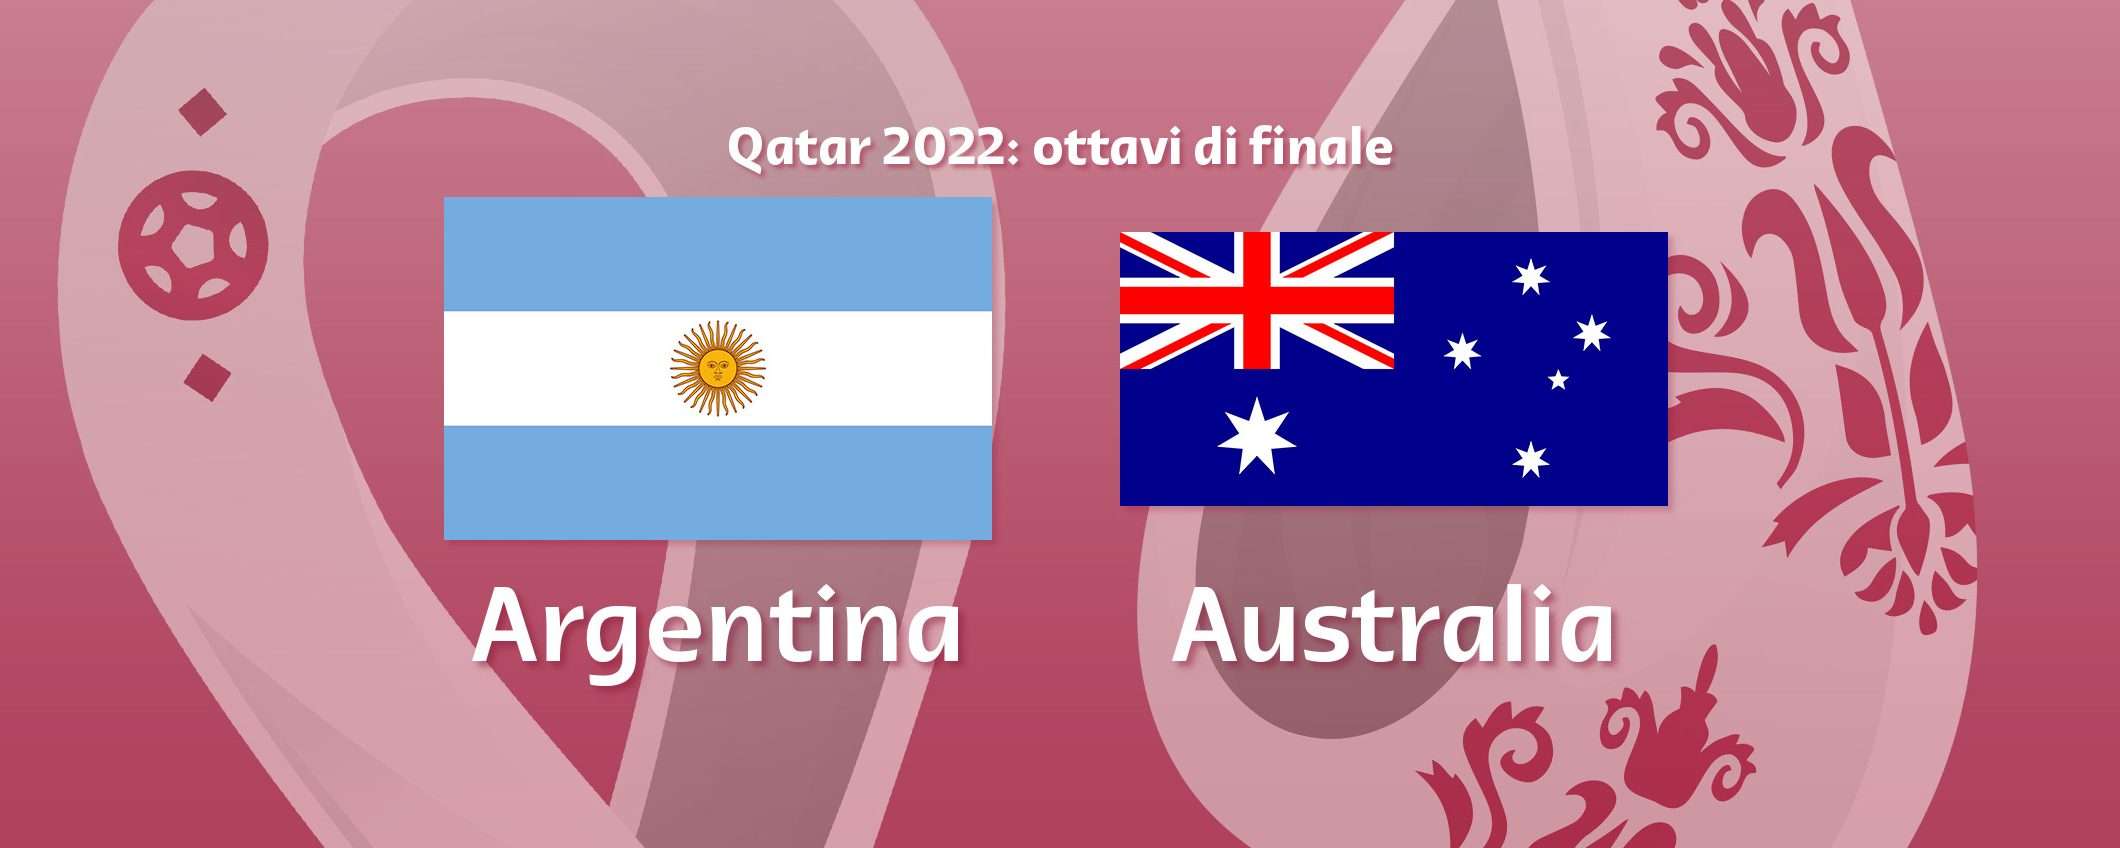 Come vedere Argentina-Australia in streaming